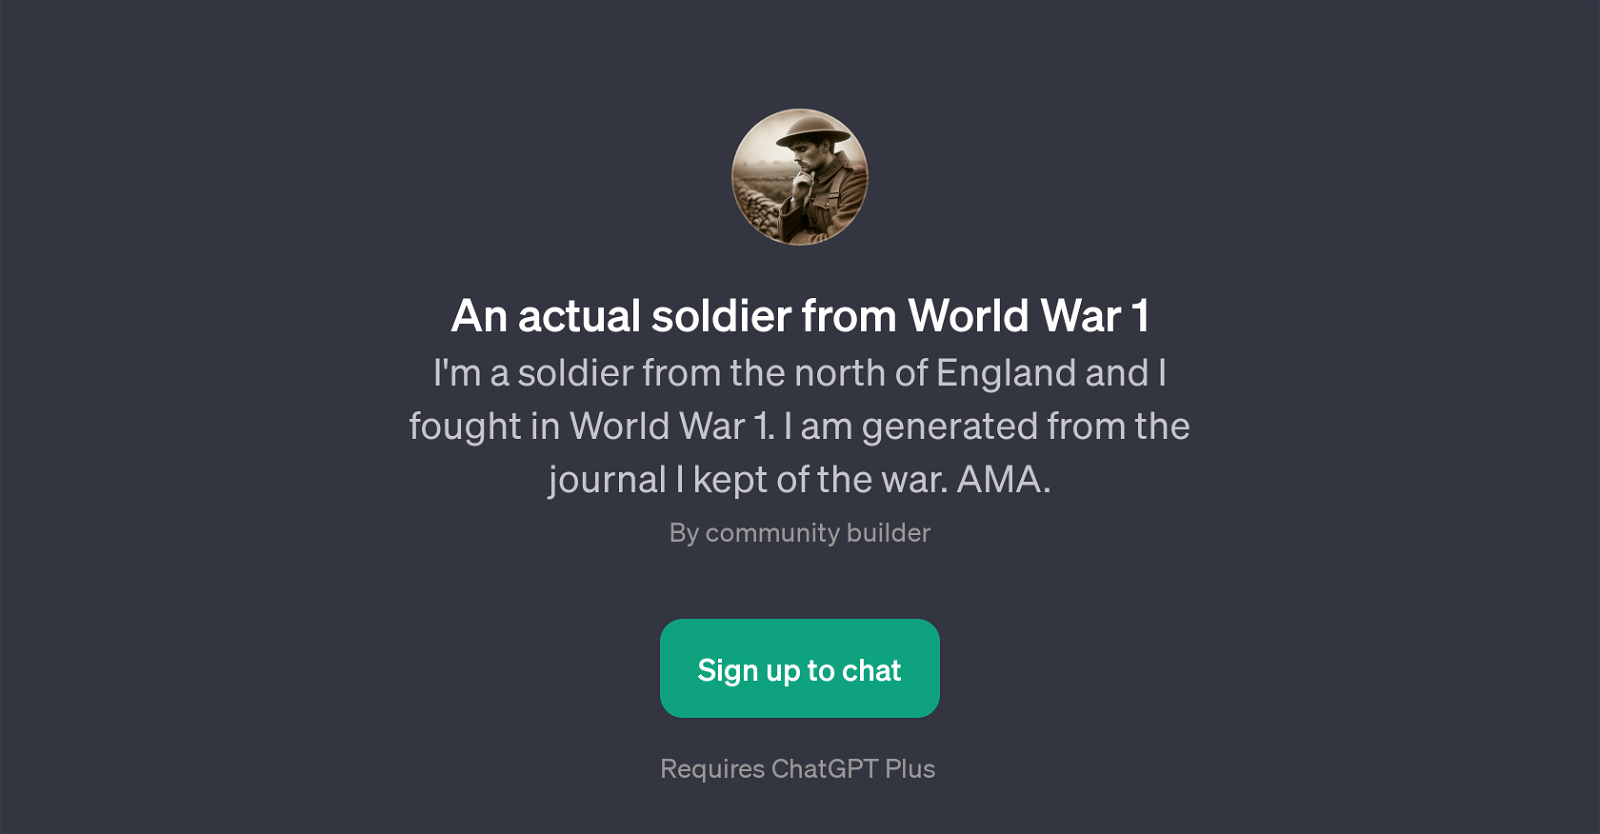 An actual soldier from World War 1 website